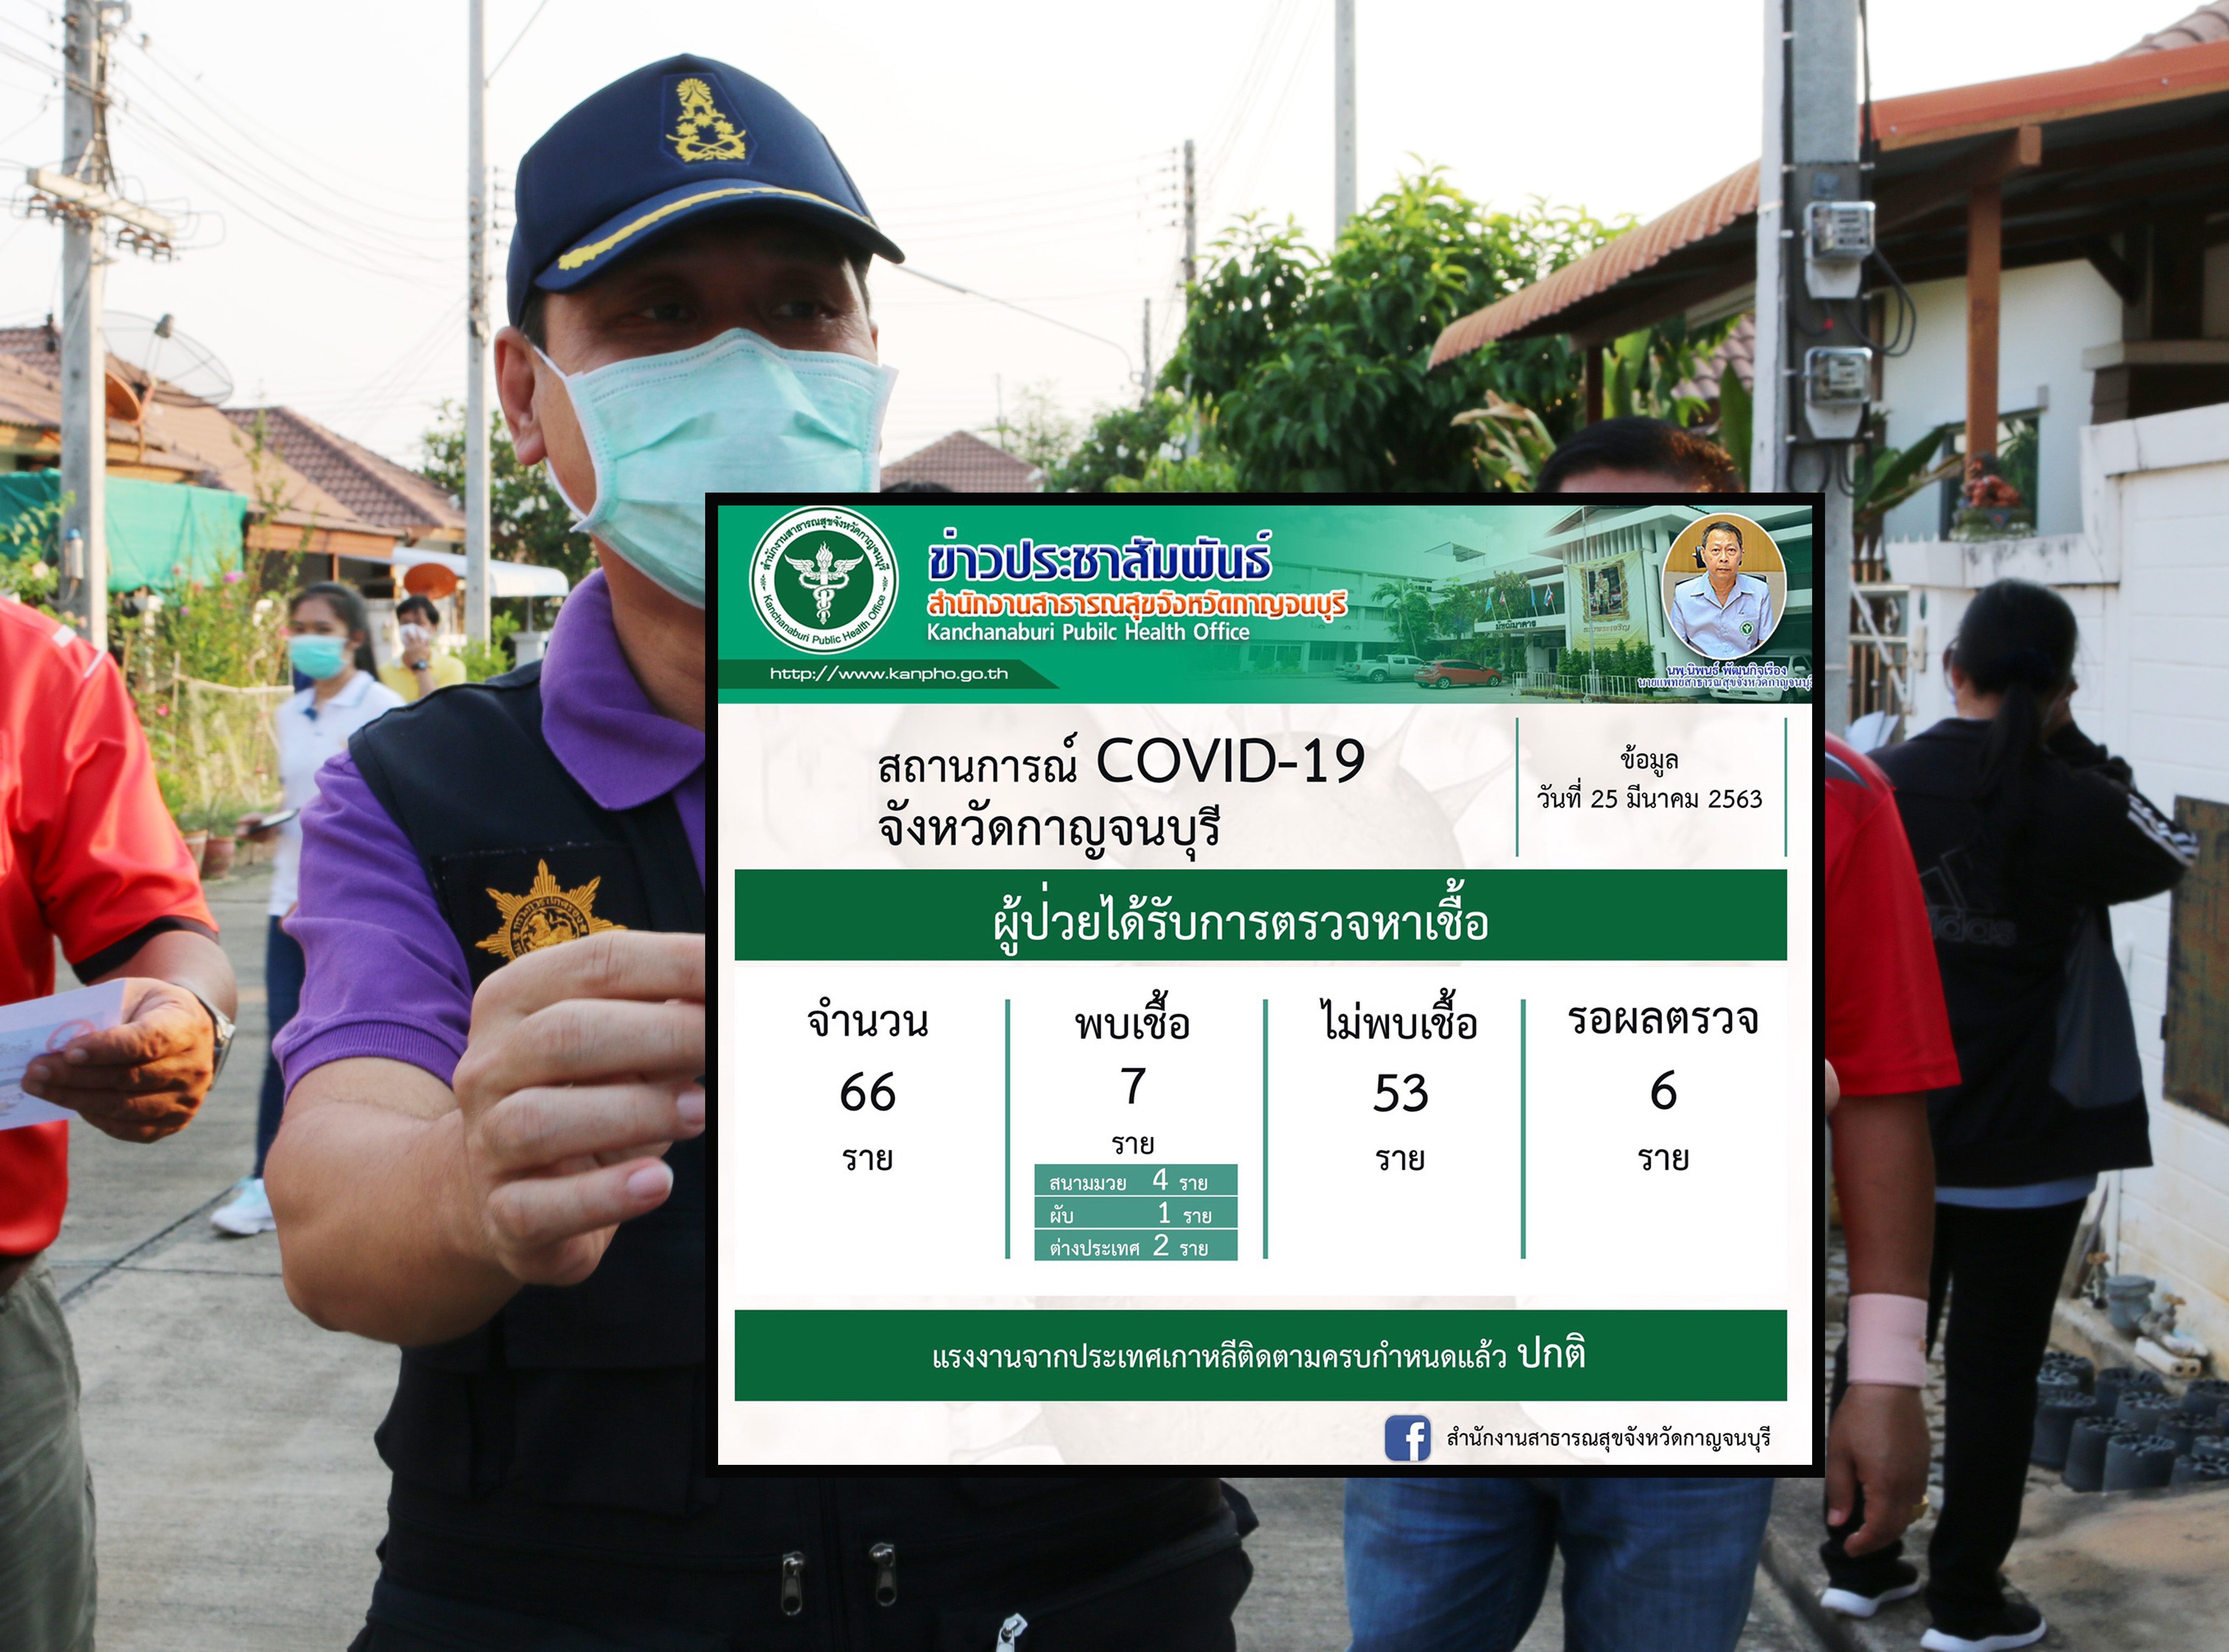 กาญจนบุรี เปิดไทม์ไลน์ 7 ผู้ติดเชื้อโควิด-19 พบบุคลากรโรงพยาบาลรัฐ ติดจากเซียนมวย